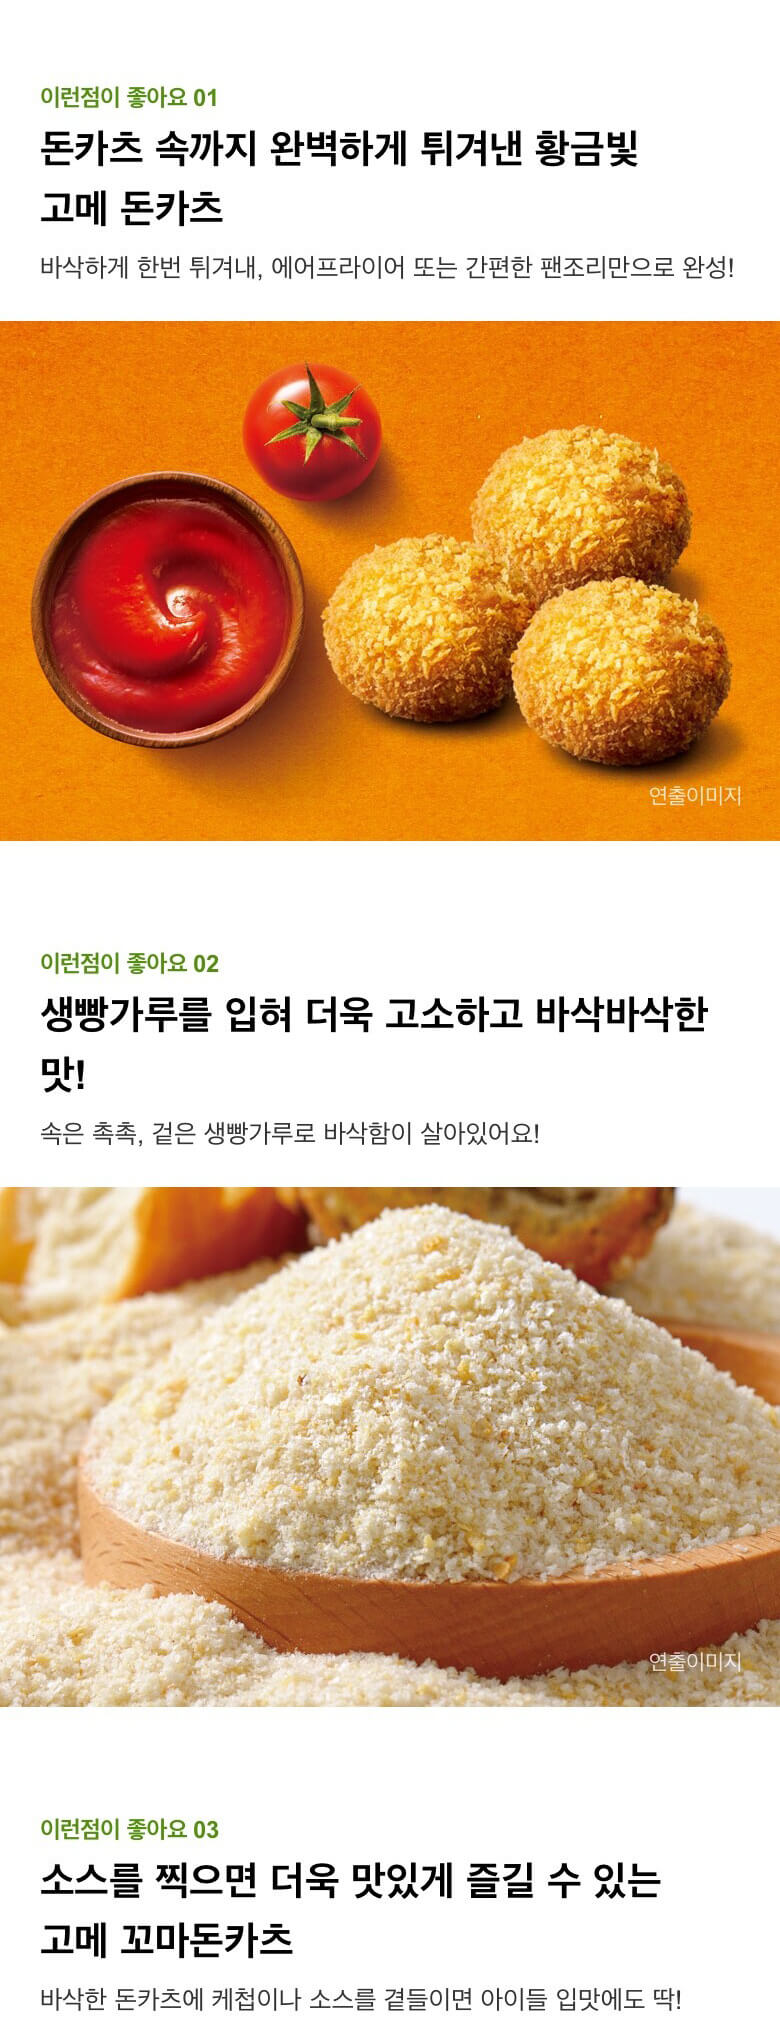 韓國食品-[CJ] Gourmet 小炸豬扒 450g